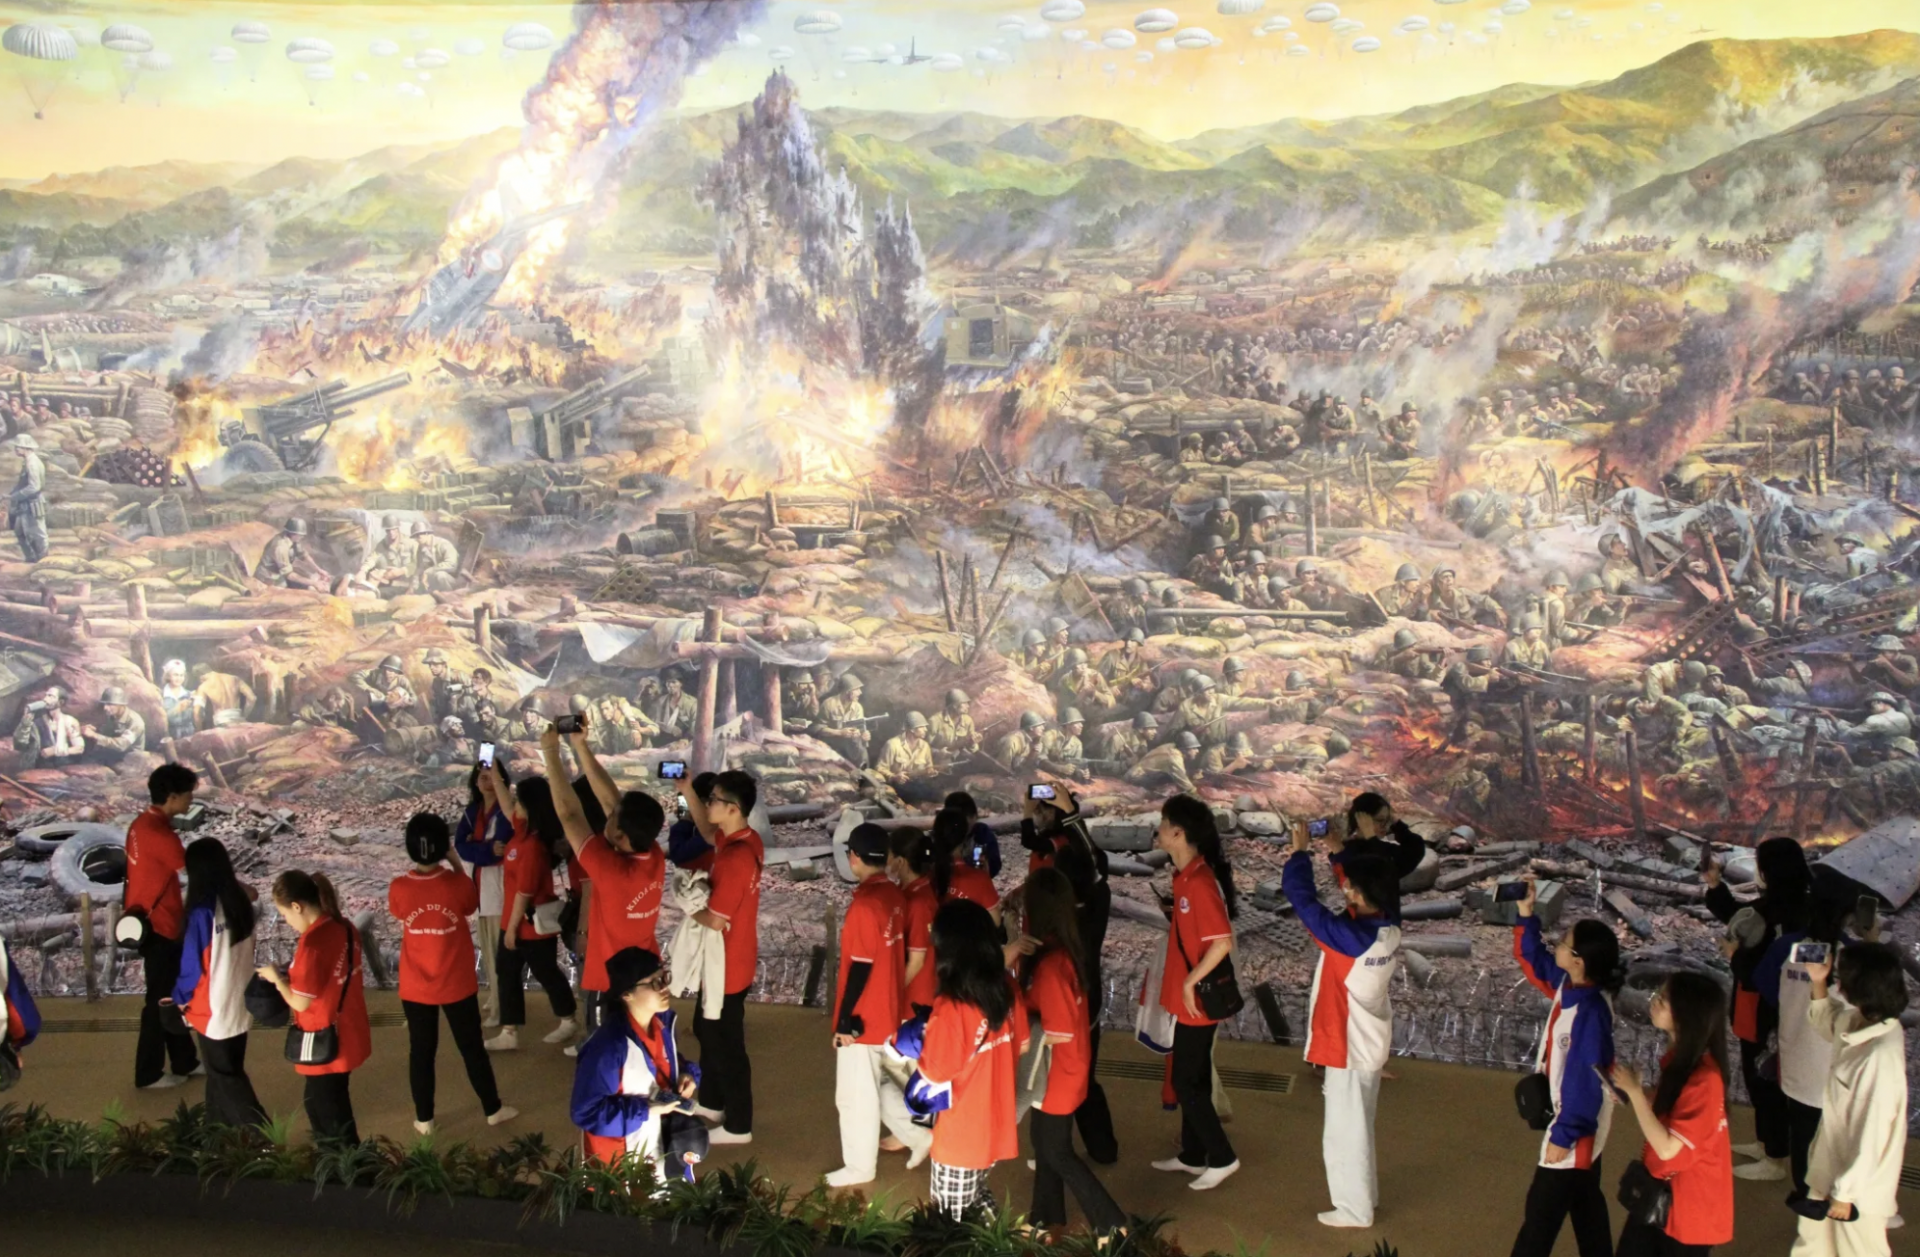 参观者欣赏奠边府战役全景画。